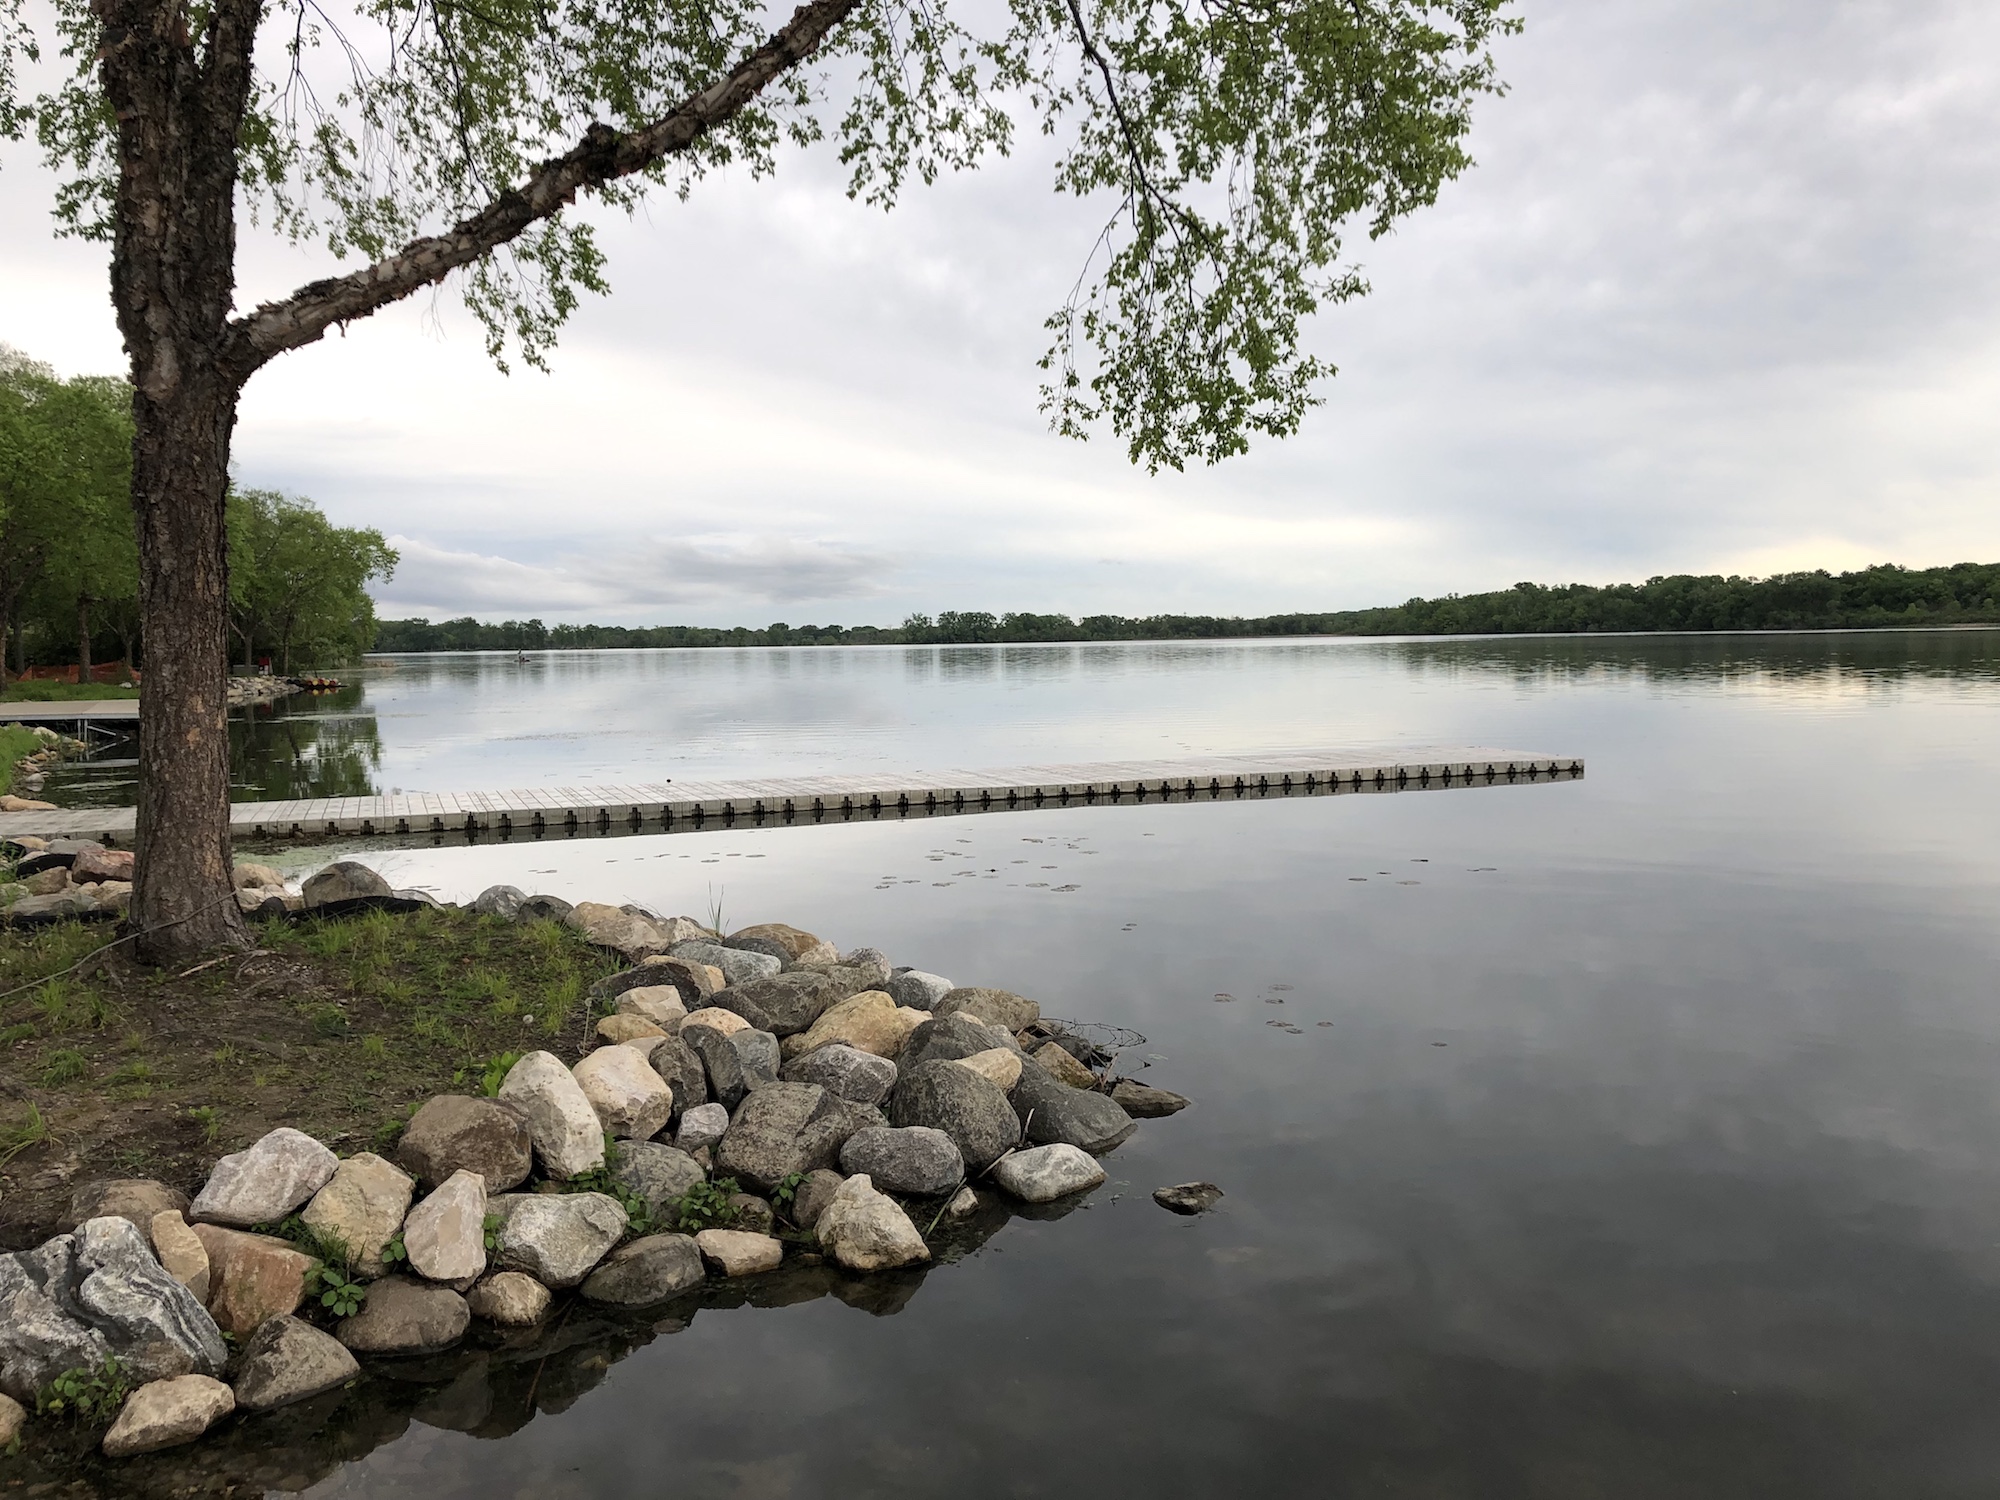 Lake Wingra on May 30, 2019.